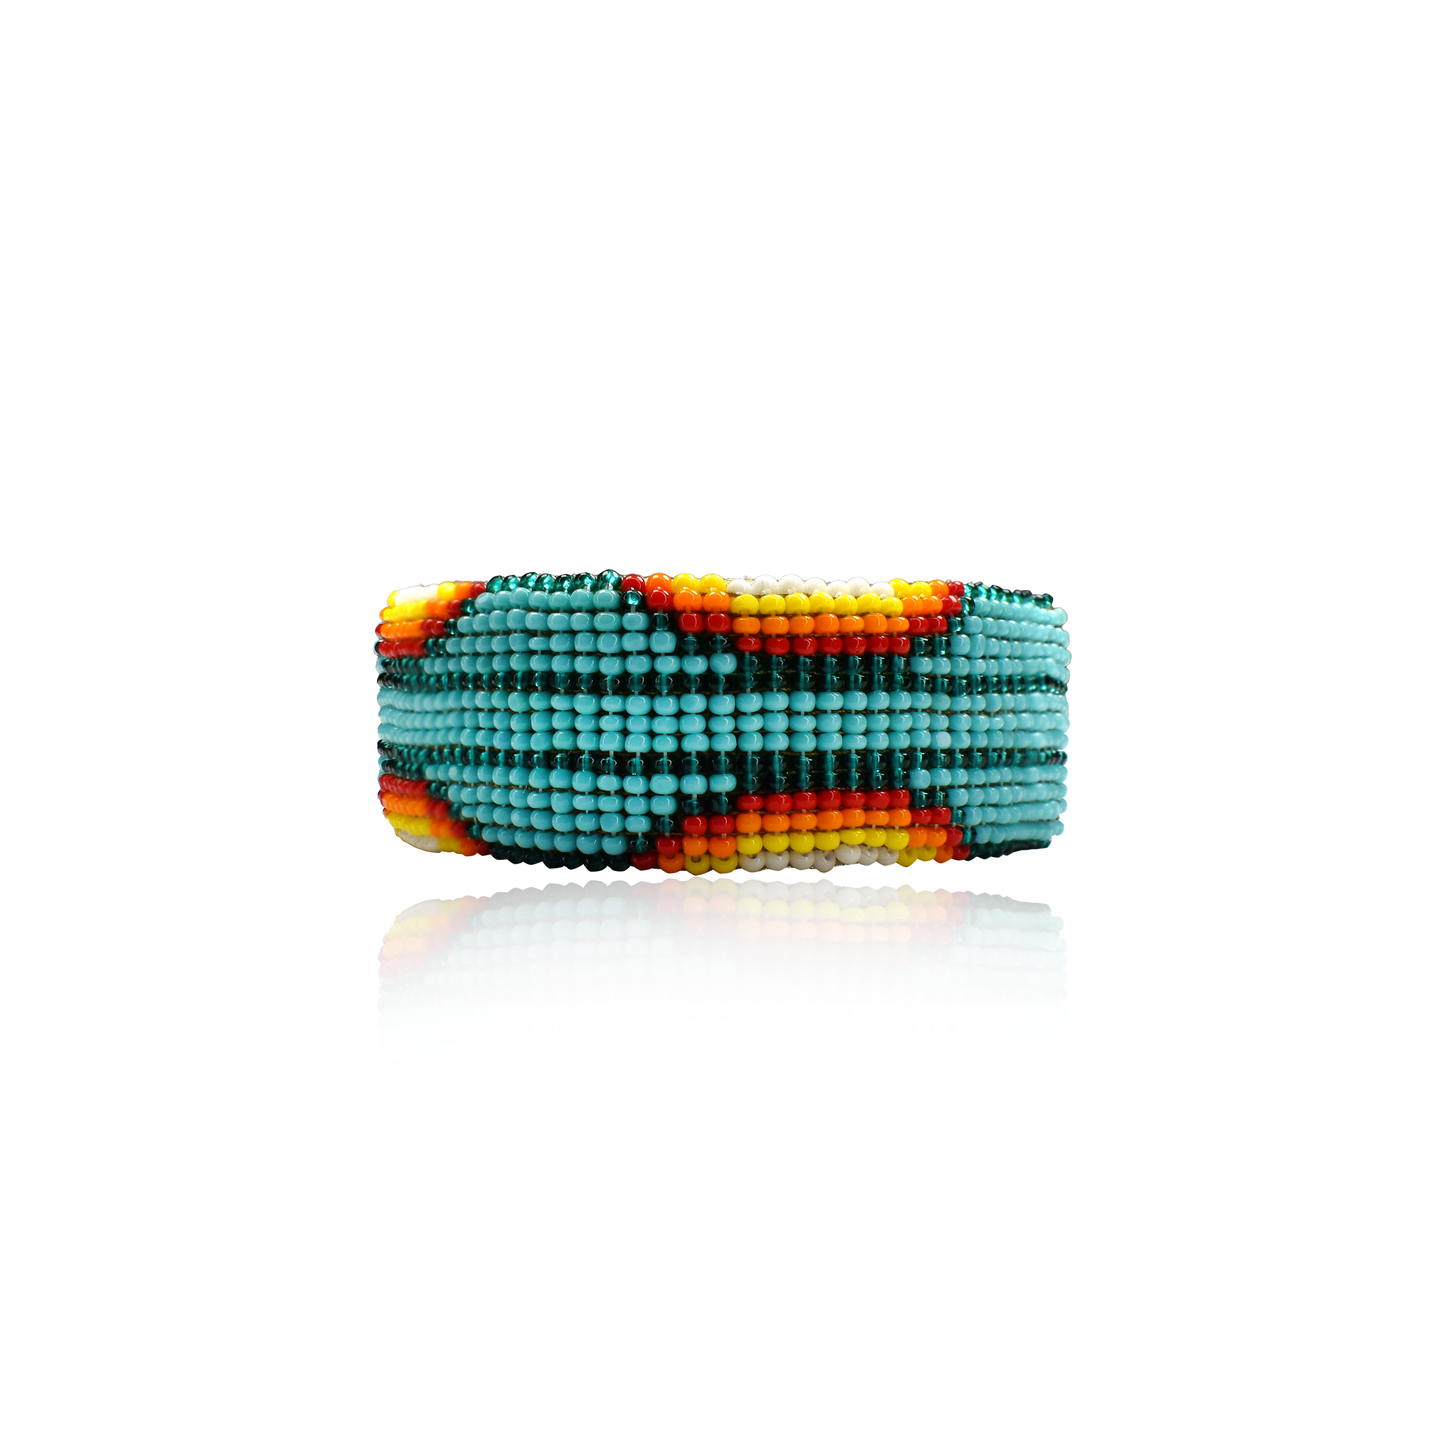 Multicolor Hand-Beaded Buckskin Bracelet by Yonavea Hawkins